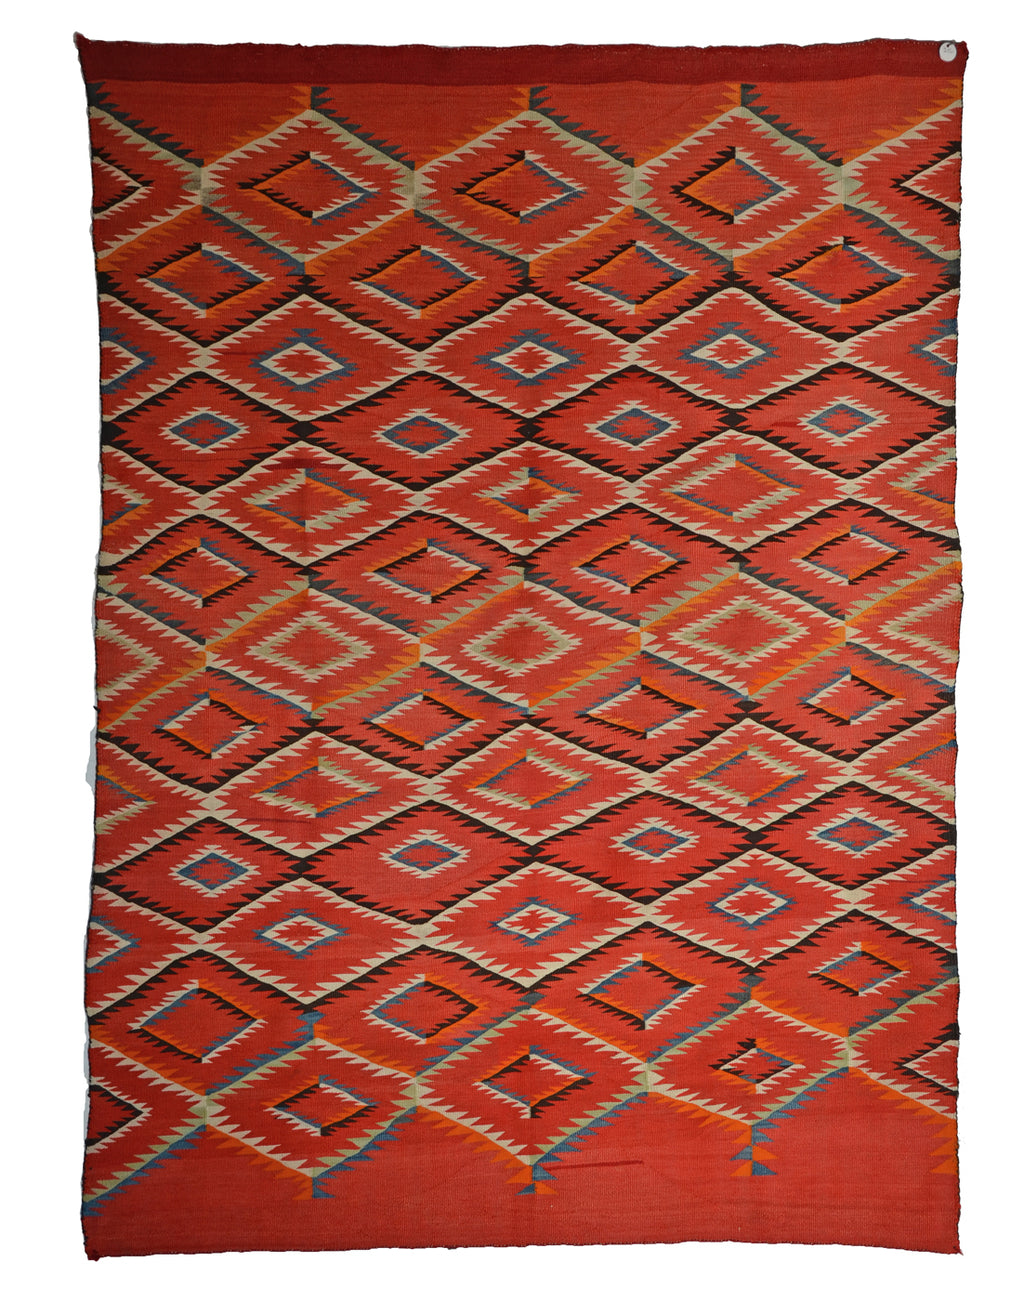 Late Classic Serape : Historic Navajo Textile : PC 67 : 55" X 75"